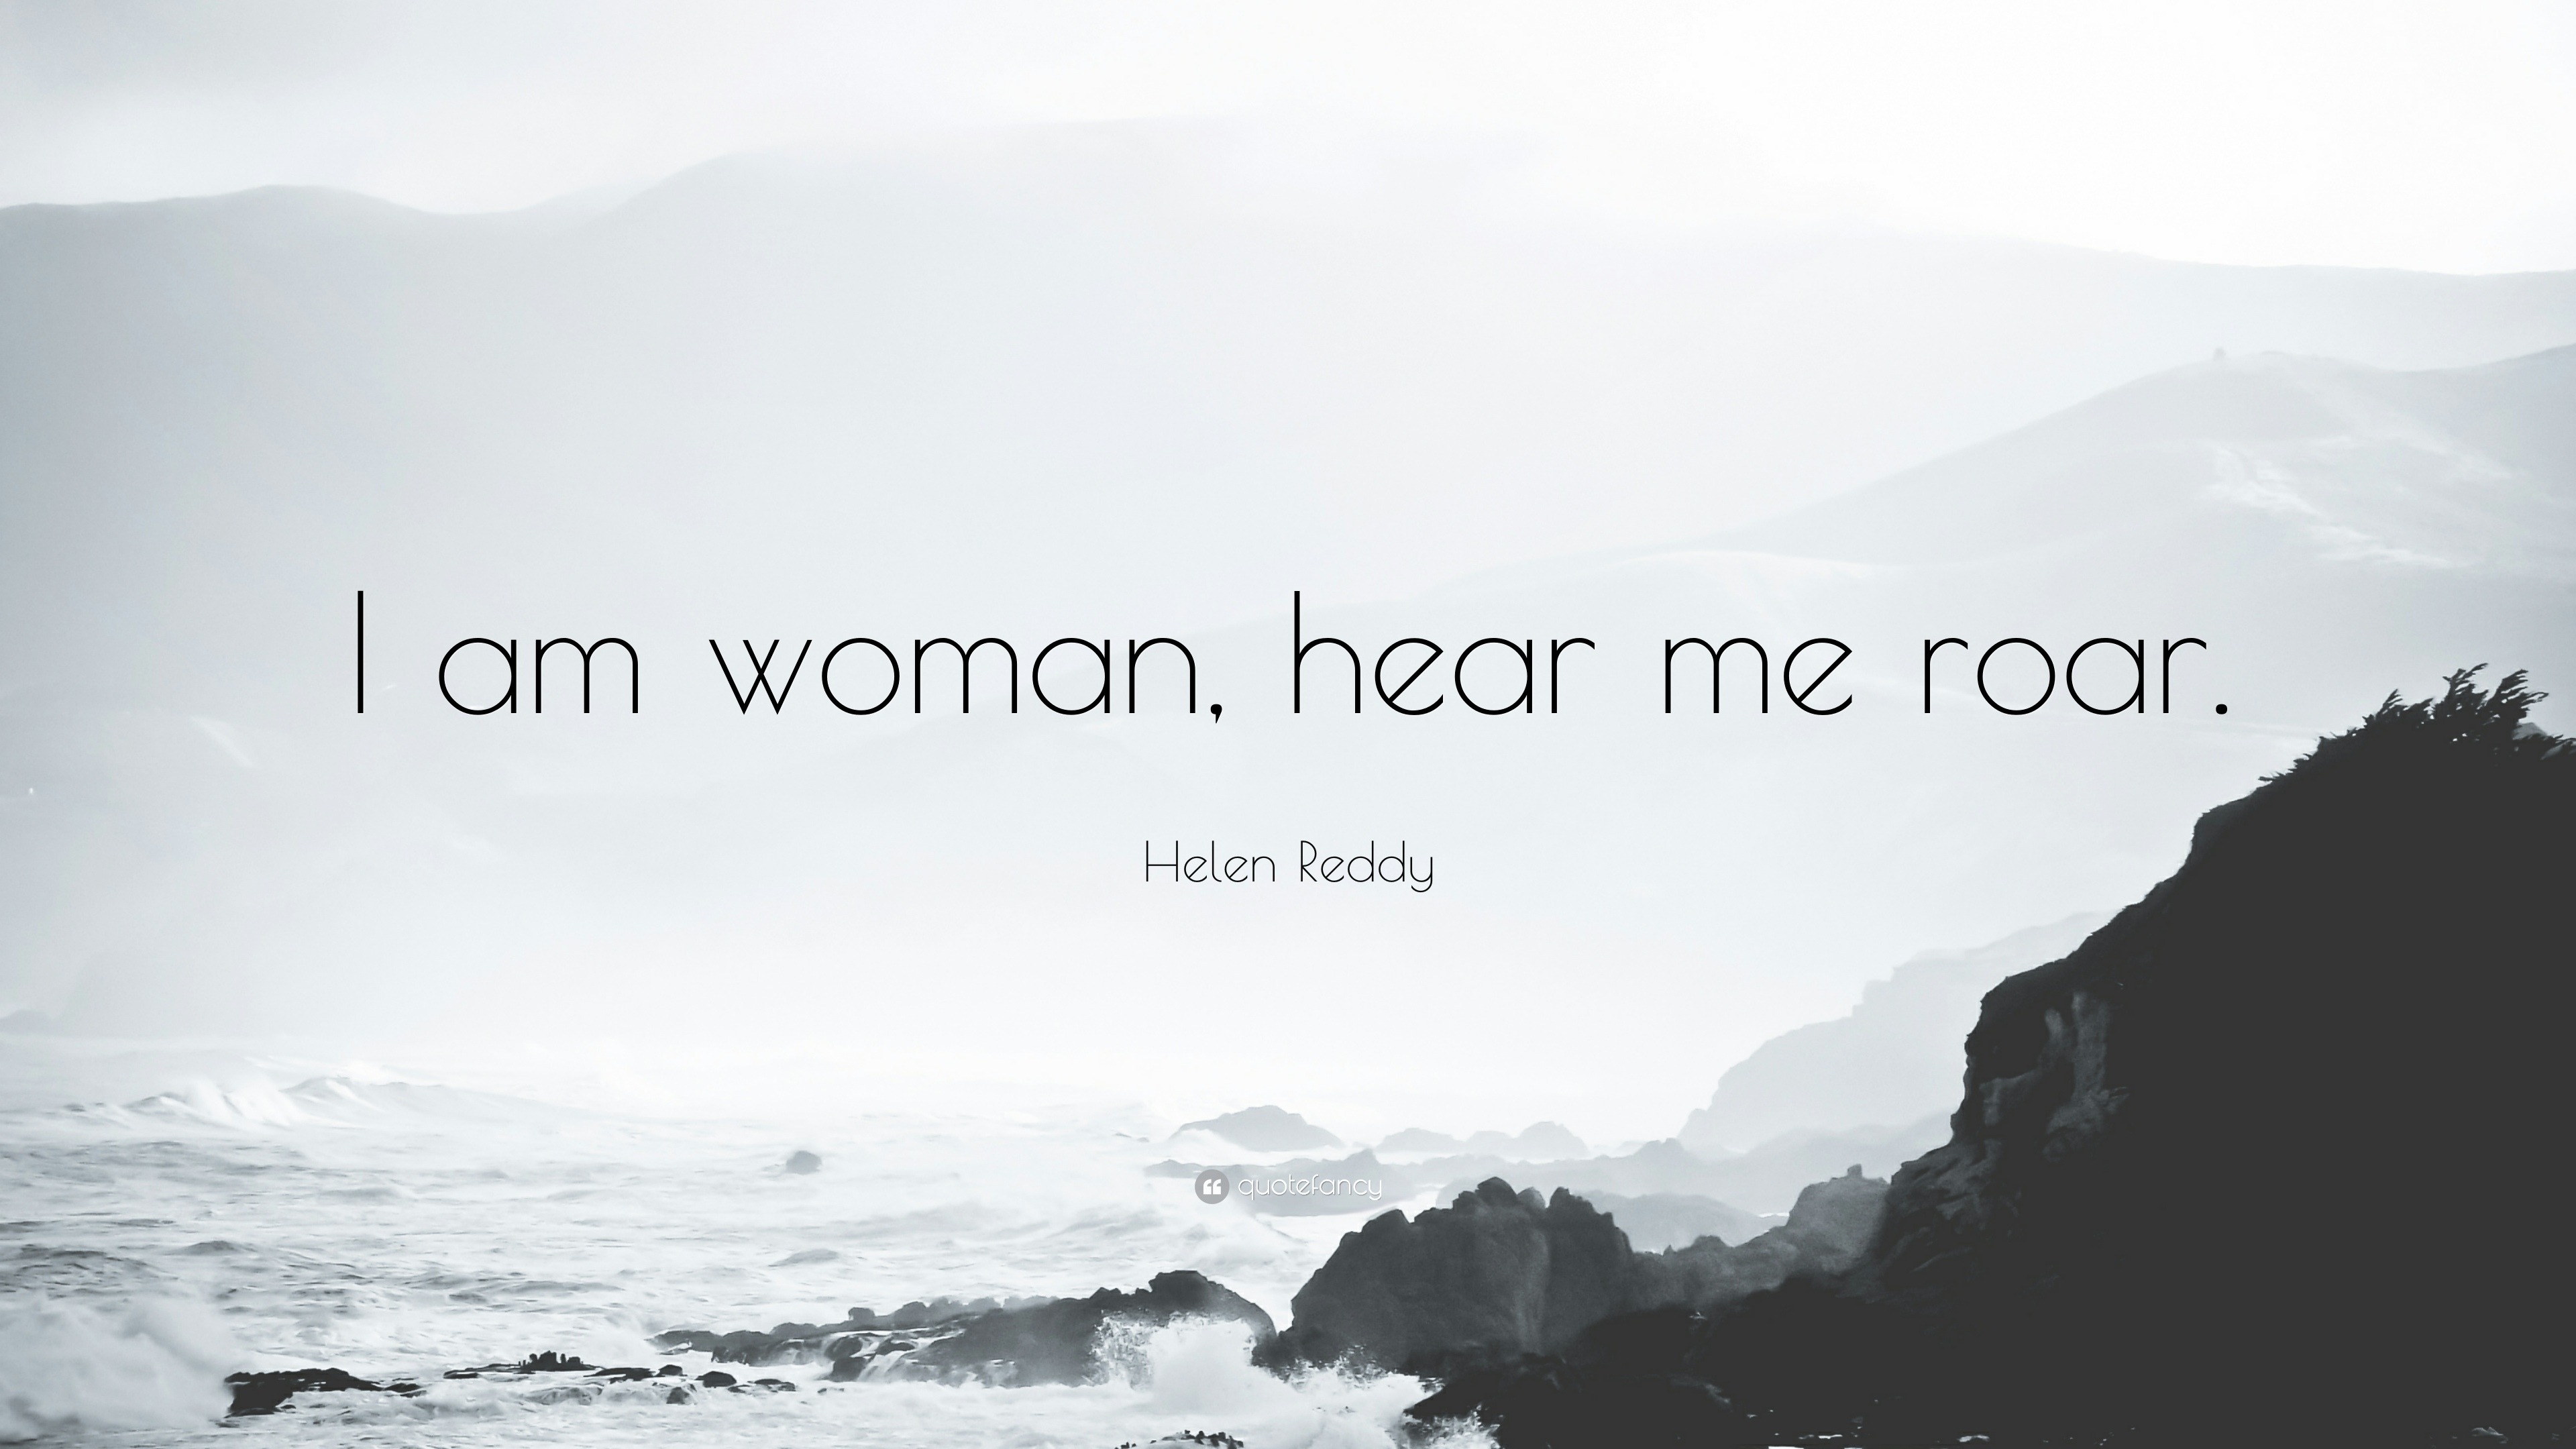 Helen Reddy Quote: “I am woman, hear me roar.” (9 wallpapers) - Quotefancy